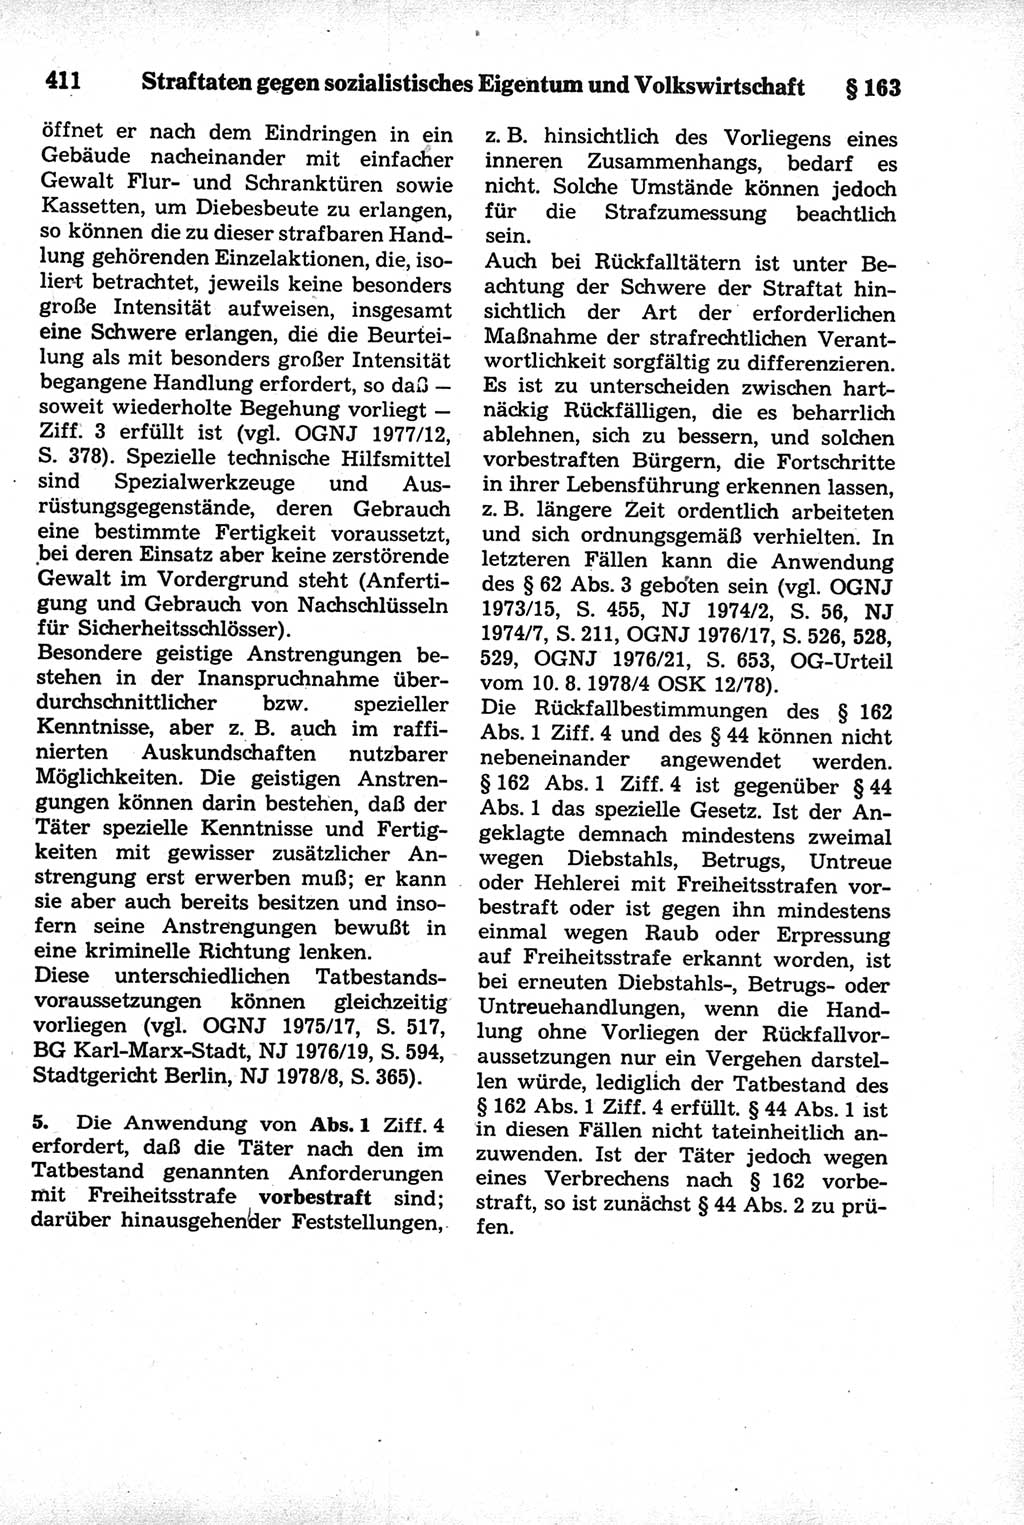 Strafrecht der Deutschen Demokratischen Republik (DDR), Kommentar zum Strafgesetzbuch (StGB) 1981, Seite 411 (Strafr. DDR Komm. StGB 1981, S. 411)